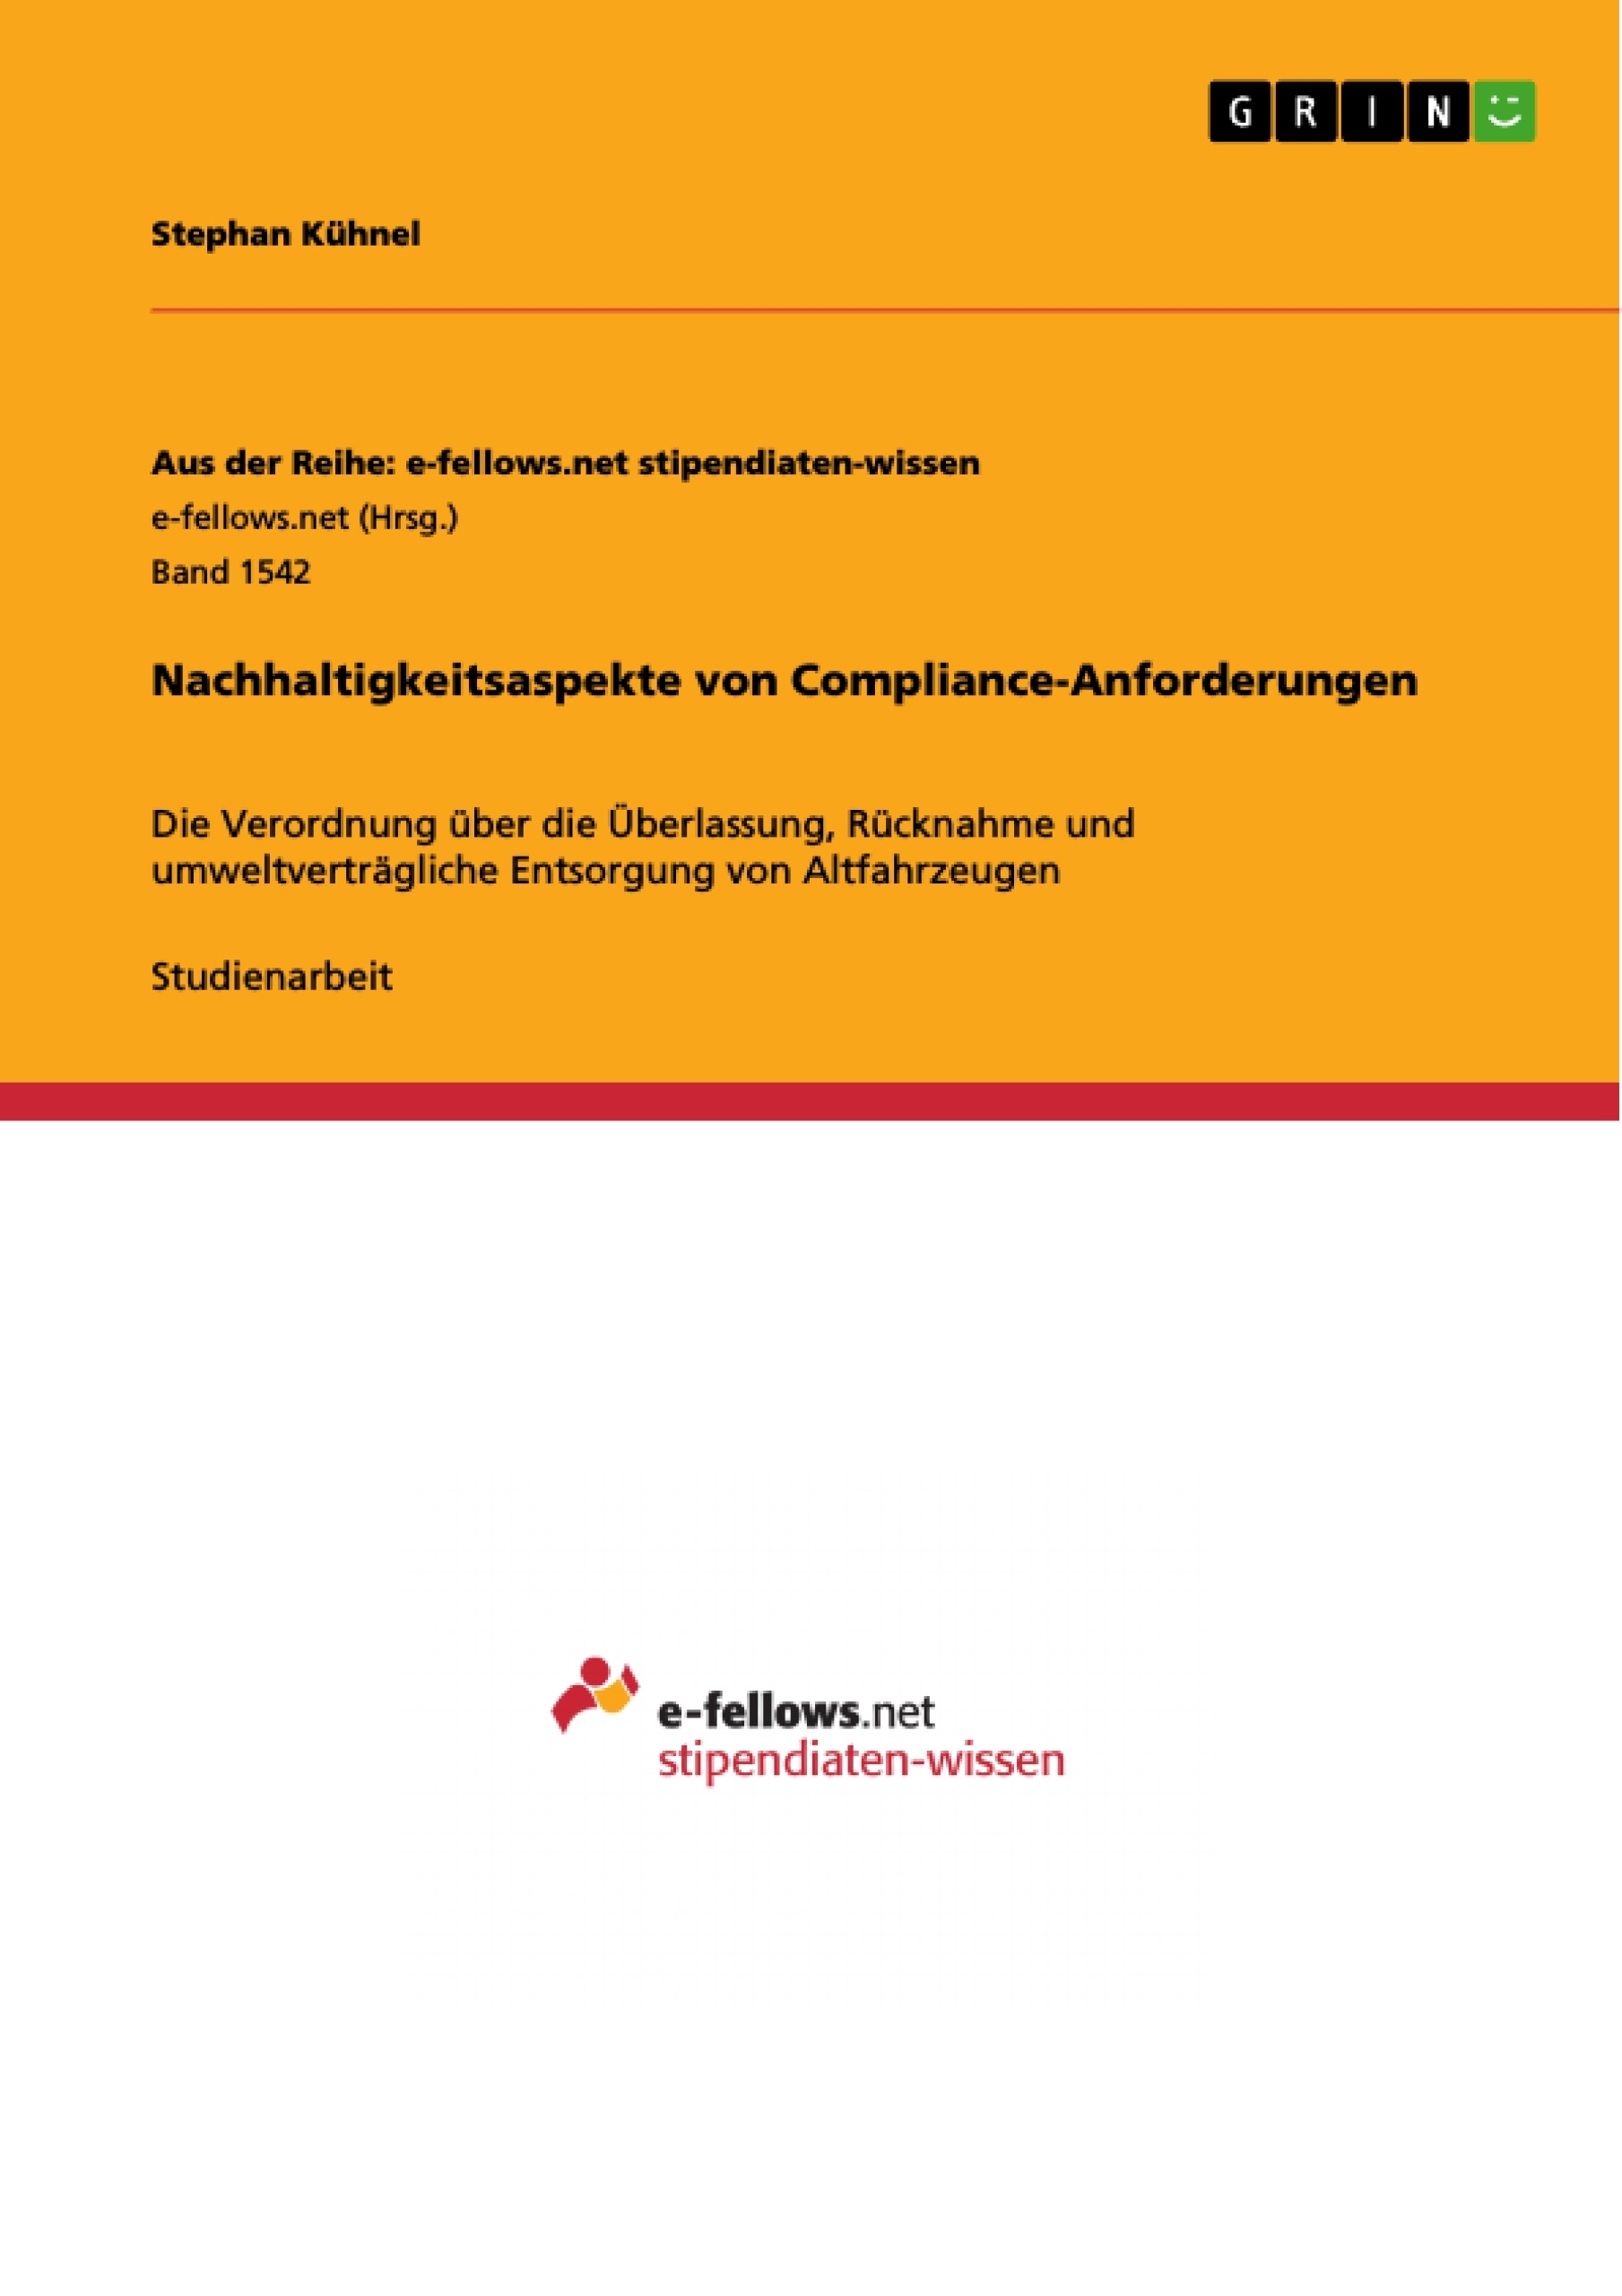 Title: Nachhaltigkeitsaspekte von Compliance-Anforderungen